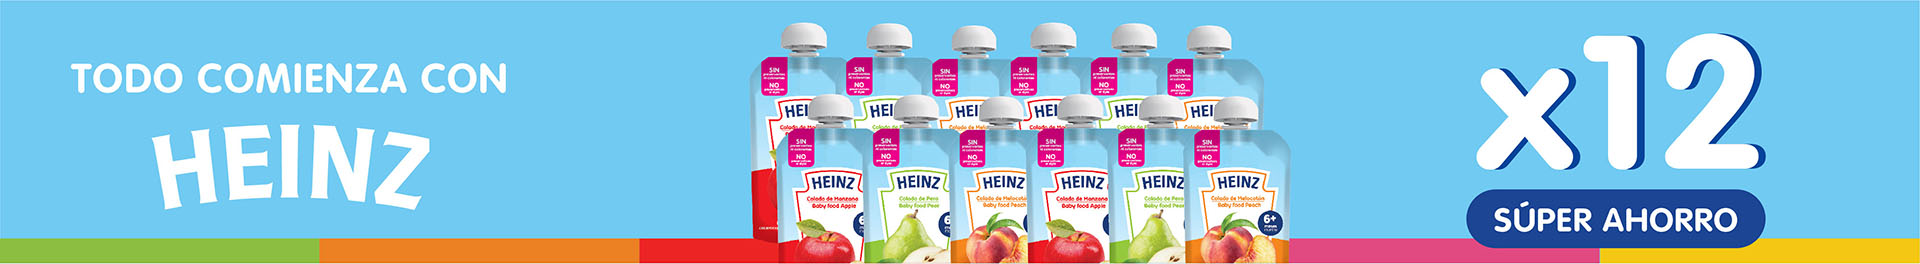 Productos Heinz